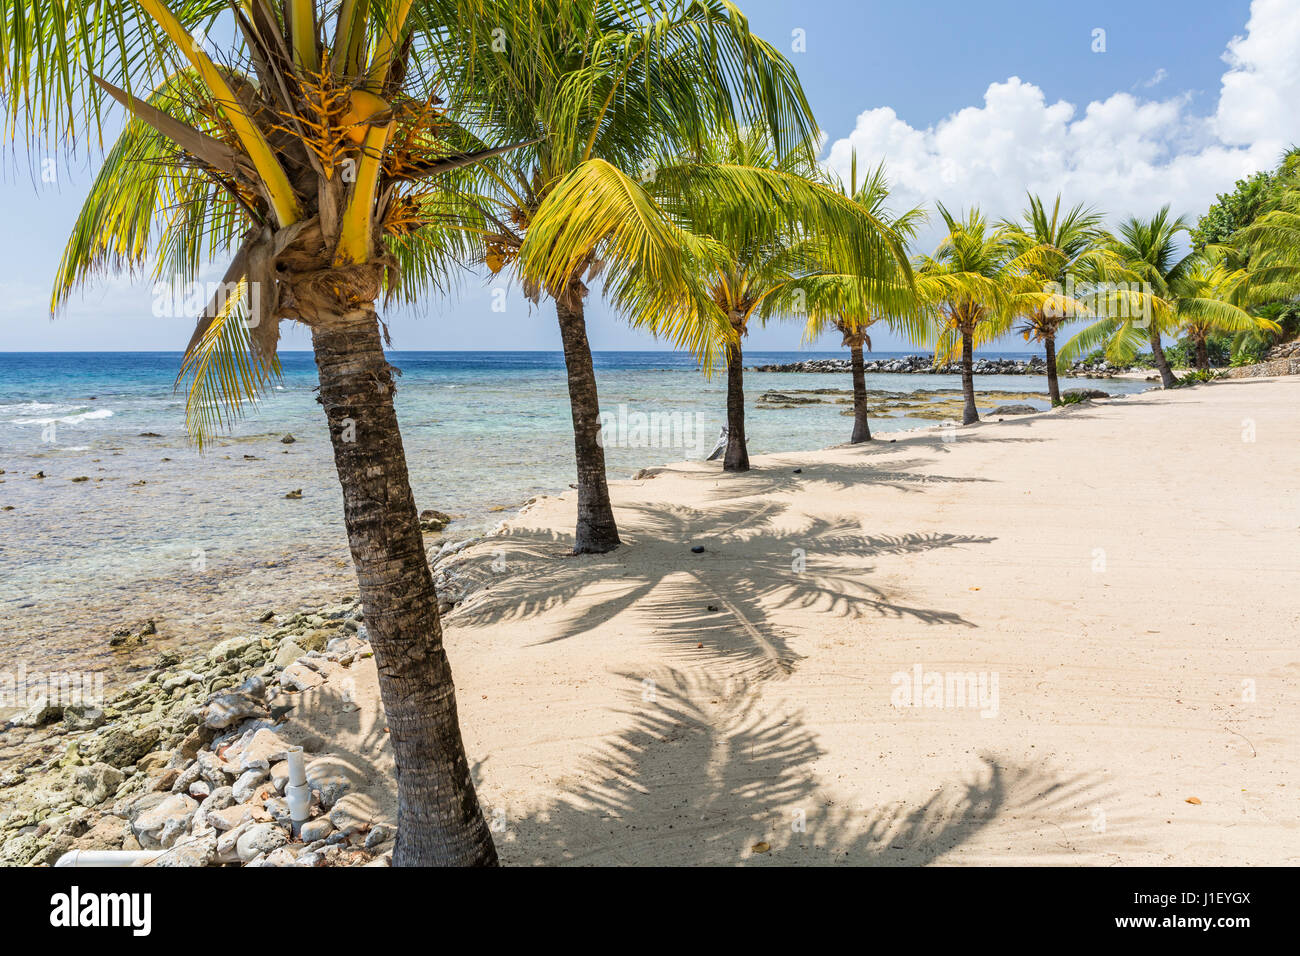 Una línea curva de cocoteros en la hermosa playa de arena y arrecifes de coral en el faro en el extremo oeste de Roatán, Honduras. Foto de stock